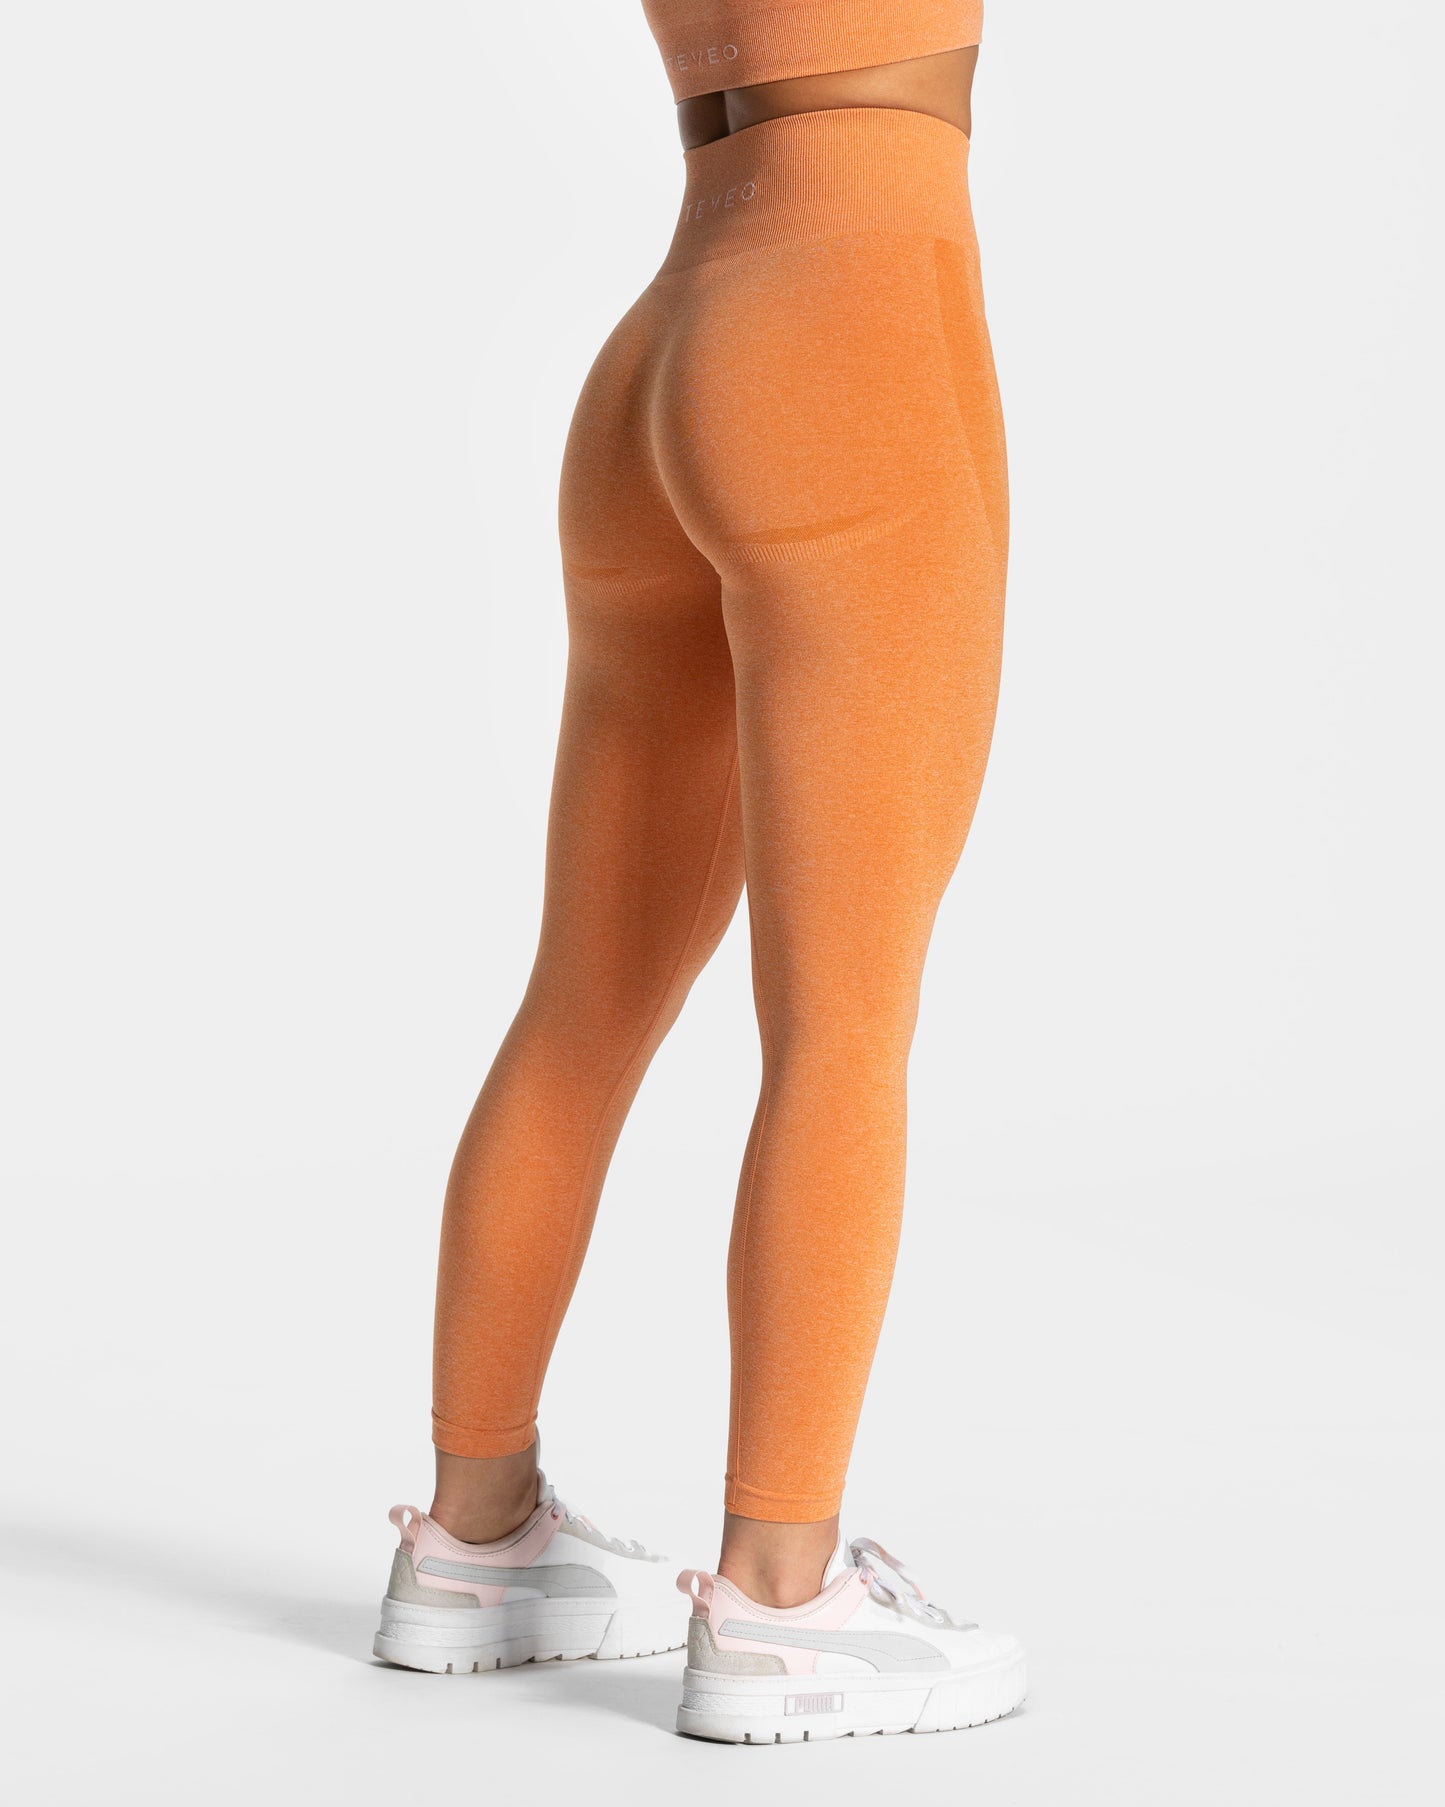 Evolution V2 Leggings "Orange"